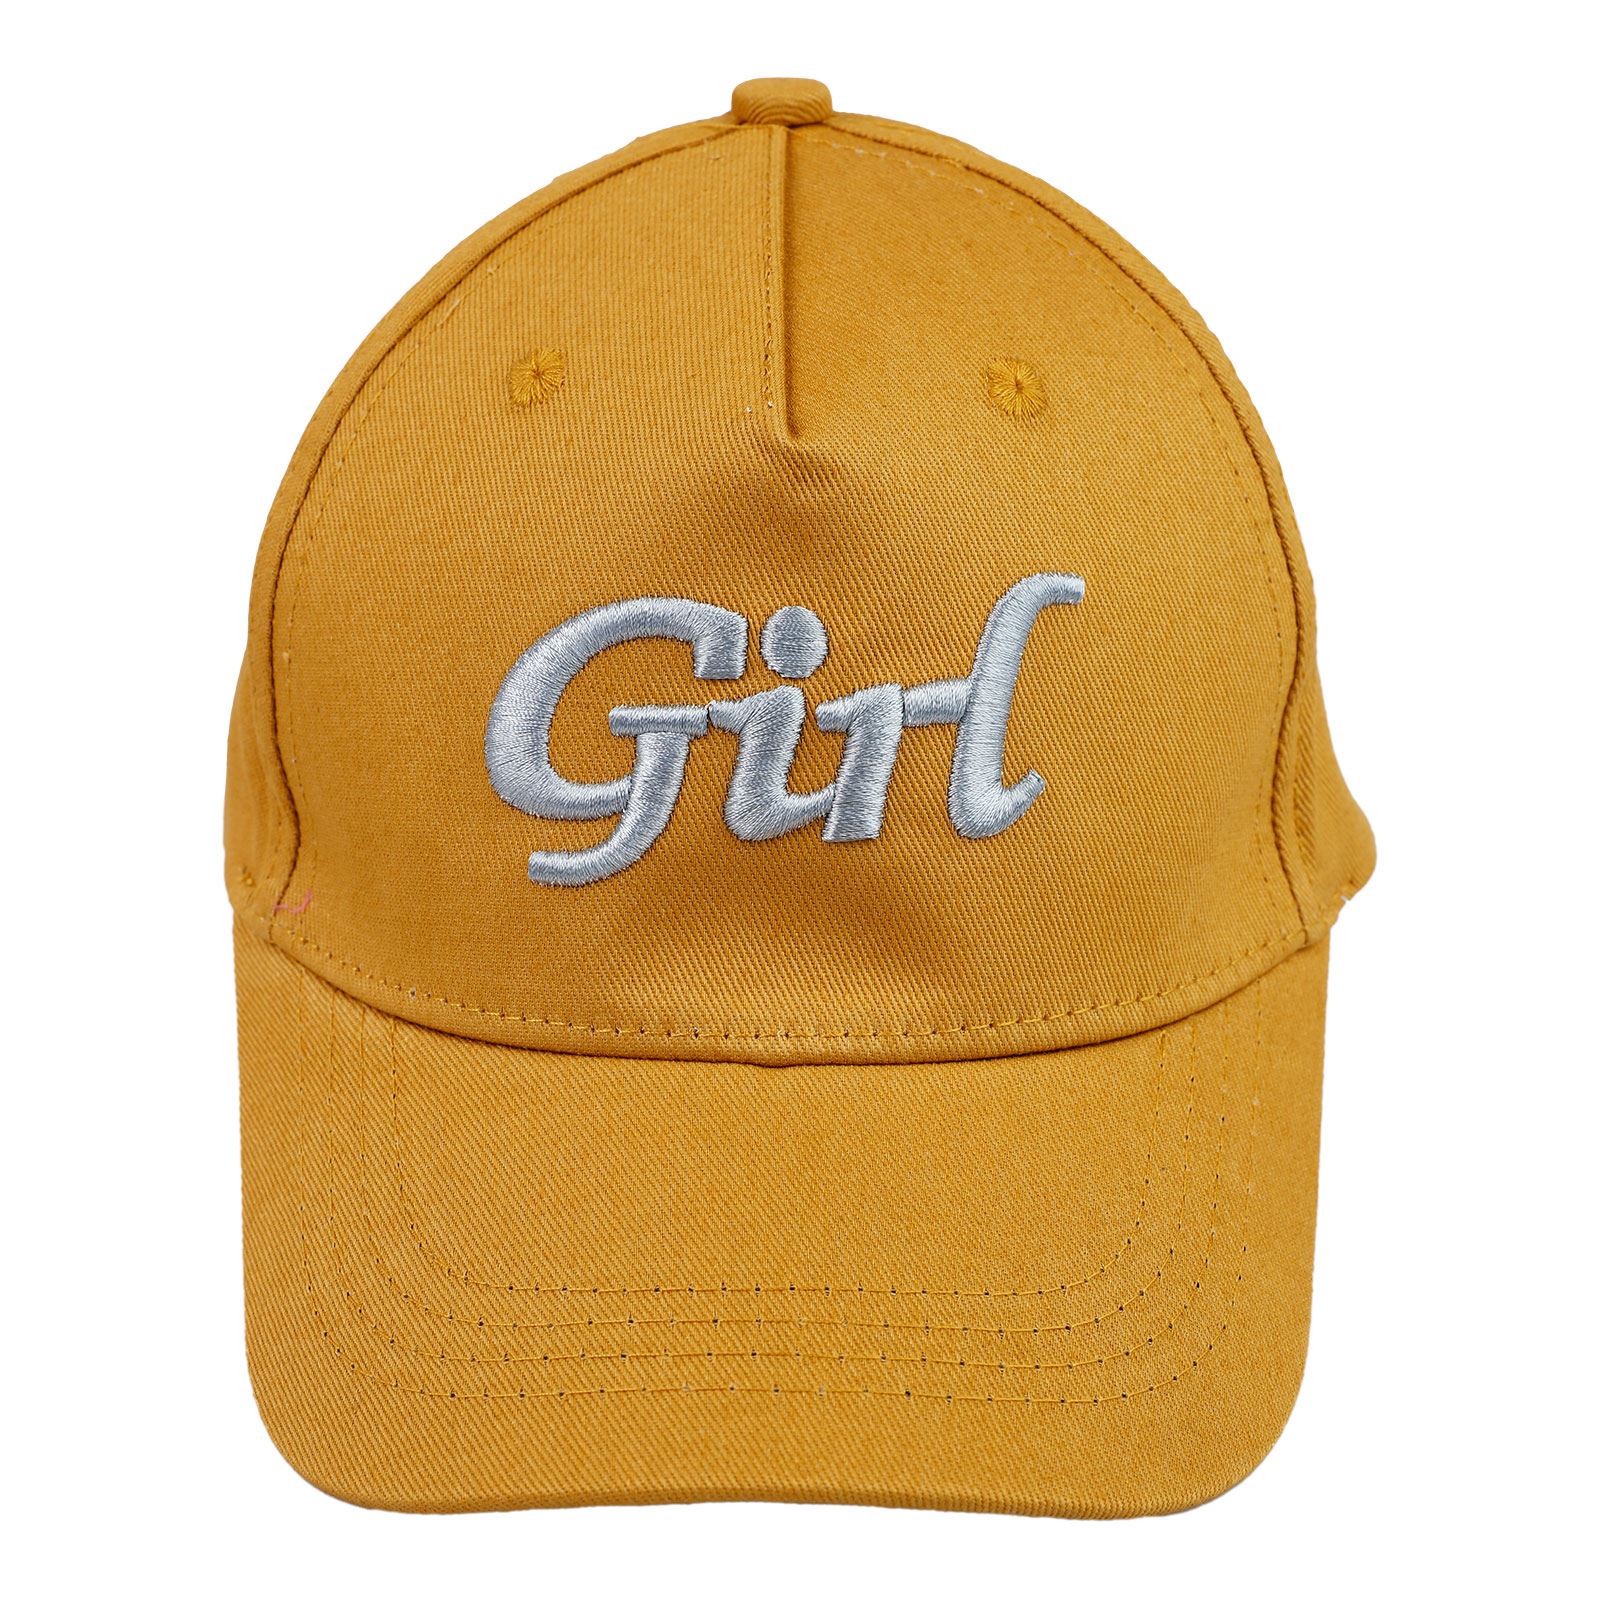 Civil Girls Kız Çocuk Kep Şapka 10-13 Yaş Hardal